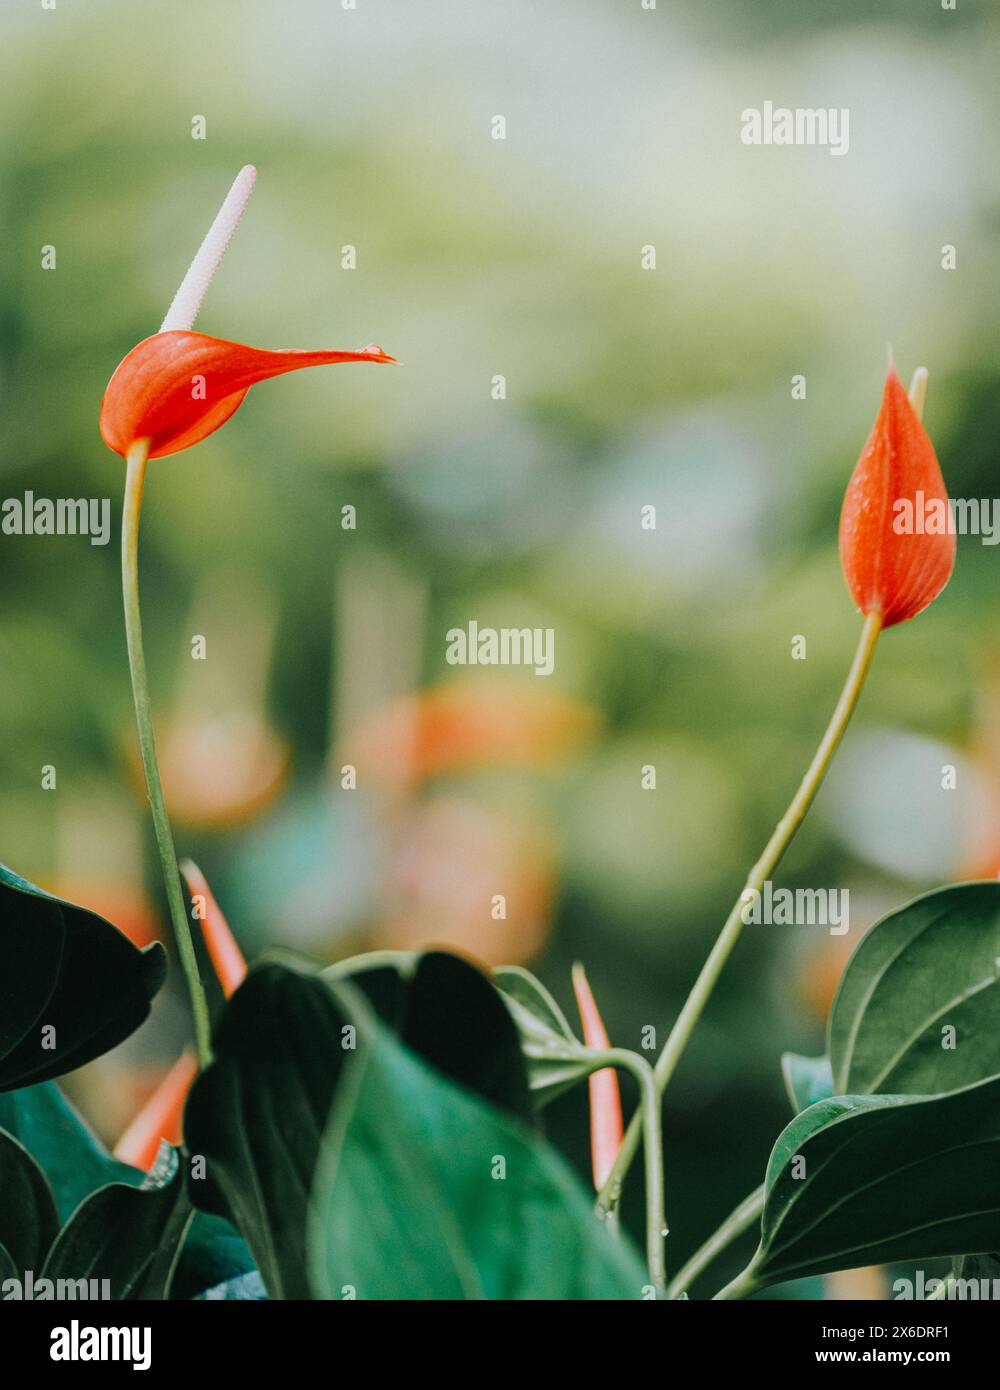 Primo piano di vivaci fiori di anturia rossa con foglie verdi lussureggianti in Martinica, che mettono in risalto la ricca flora tropicale e la bellezza naturale dell'isola Foto Stock